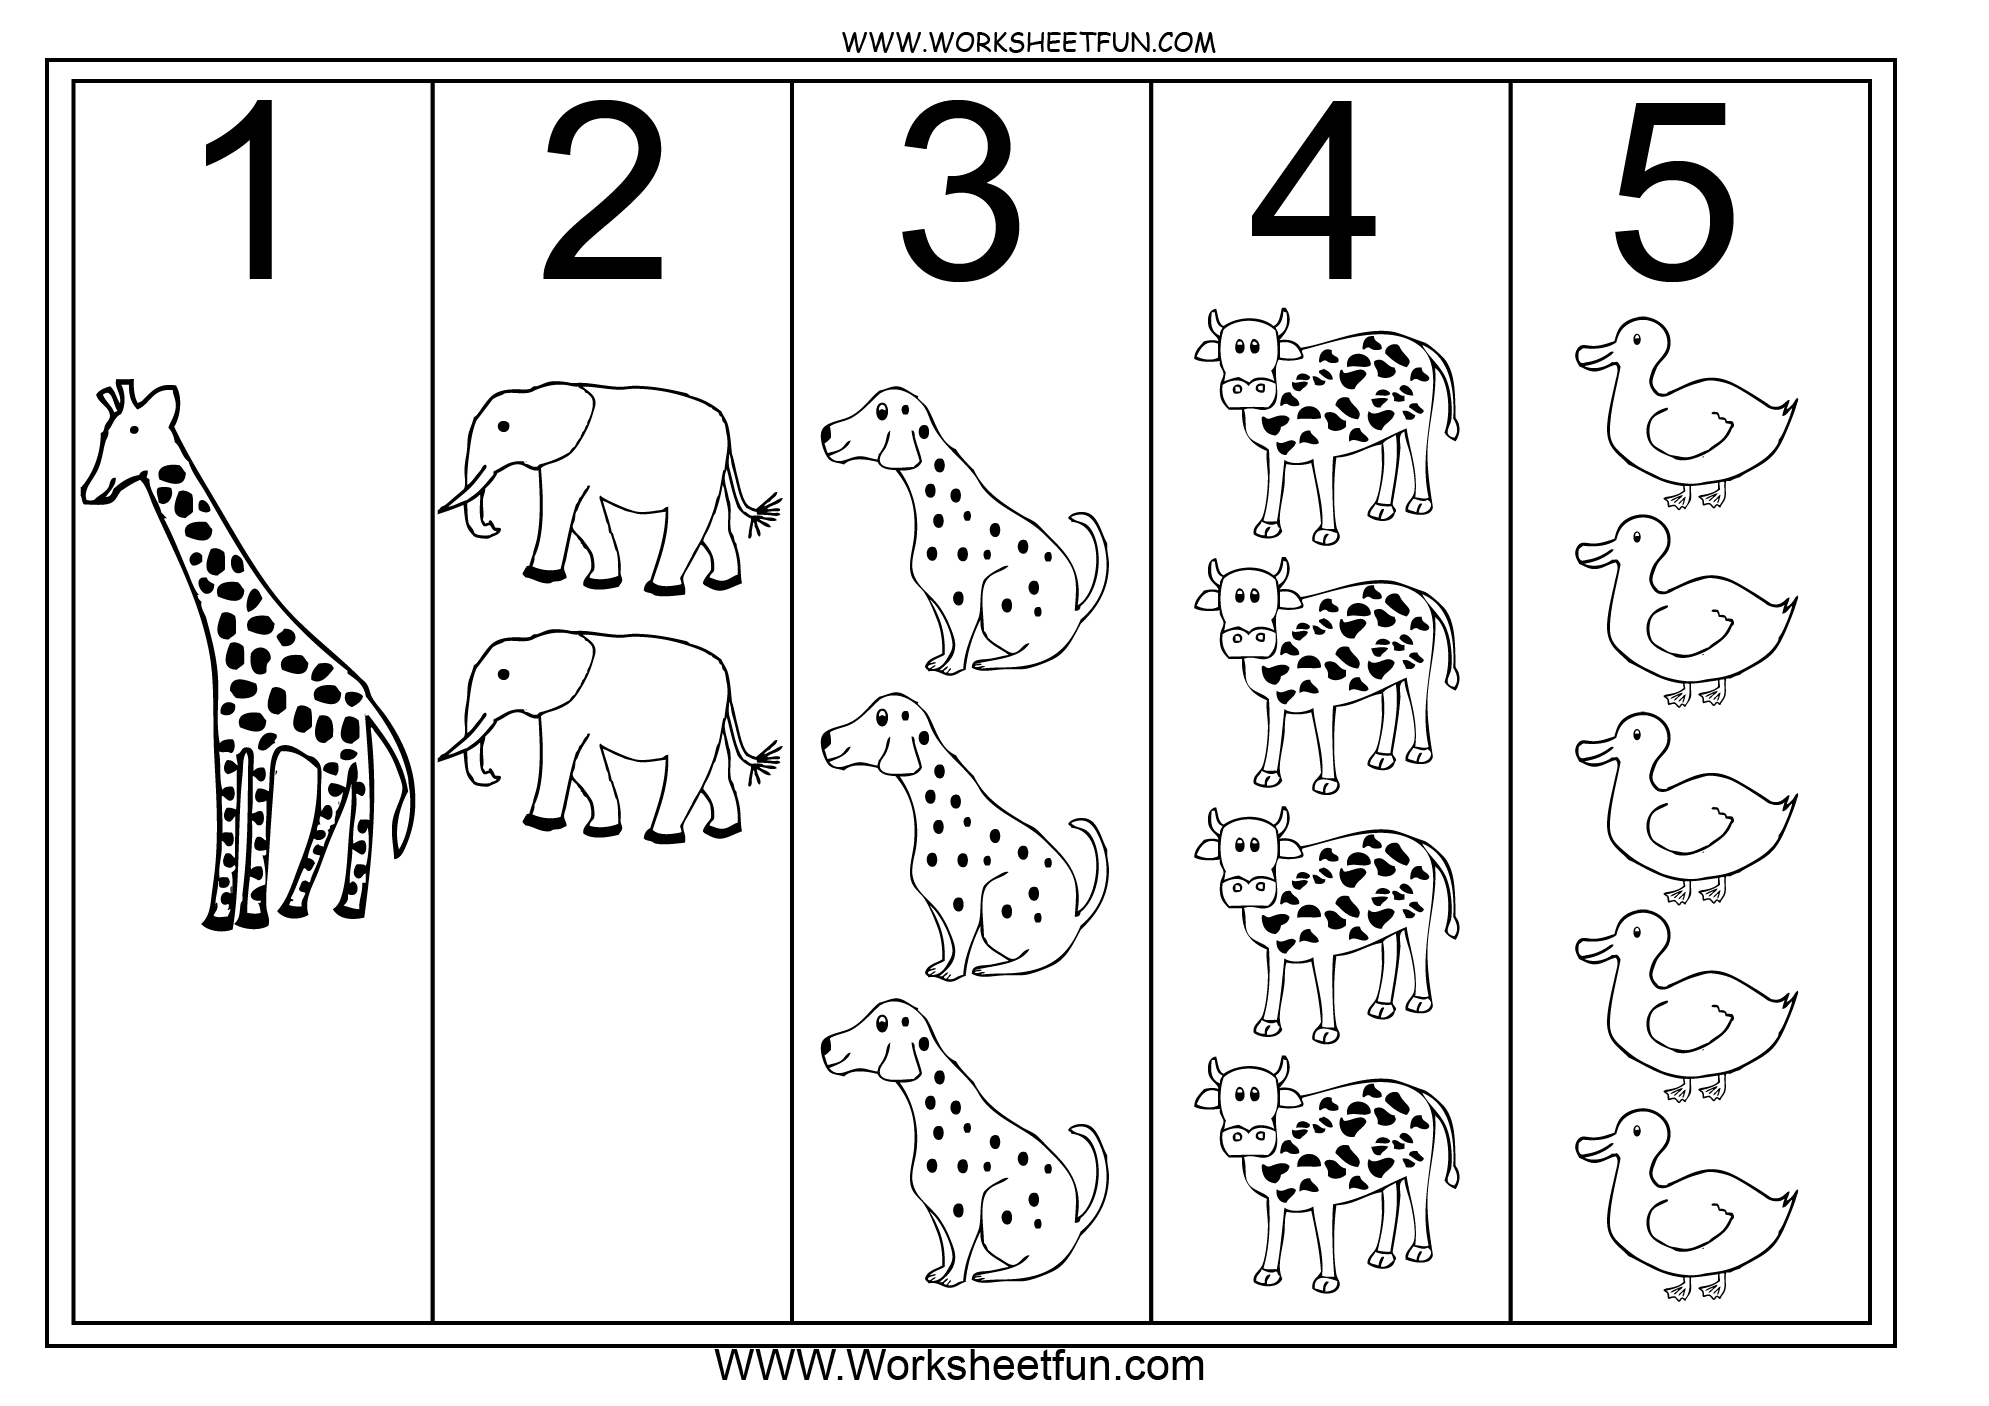 15-best-images-of-numbers-1-through-5-worksheet-preschool-worksheets-numbers-1-5-kindergarten